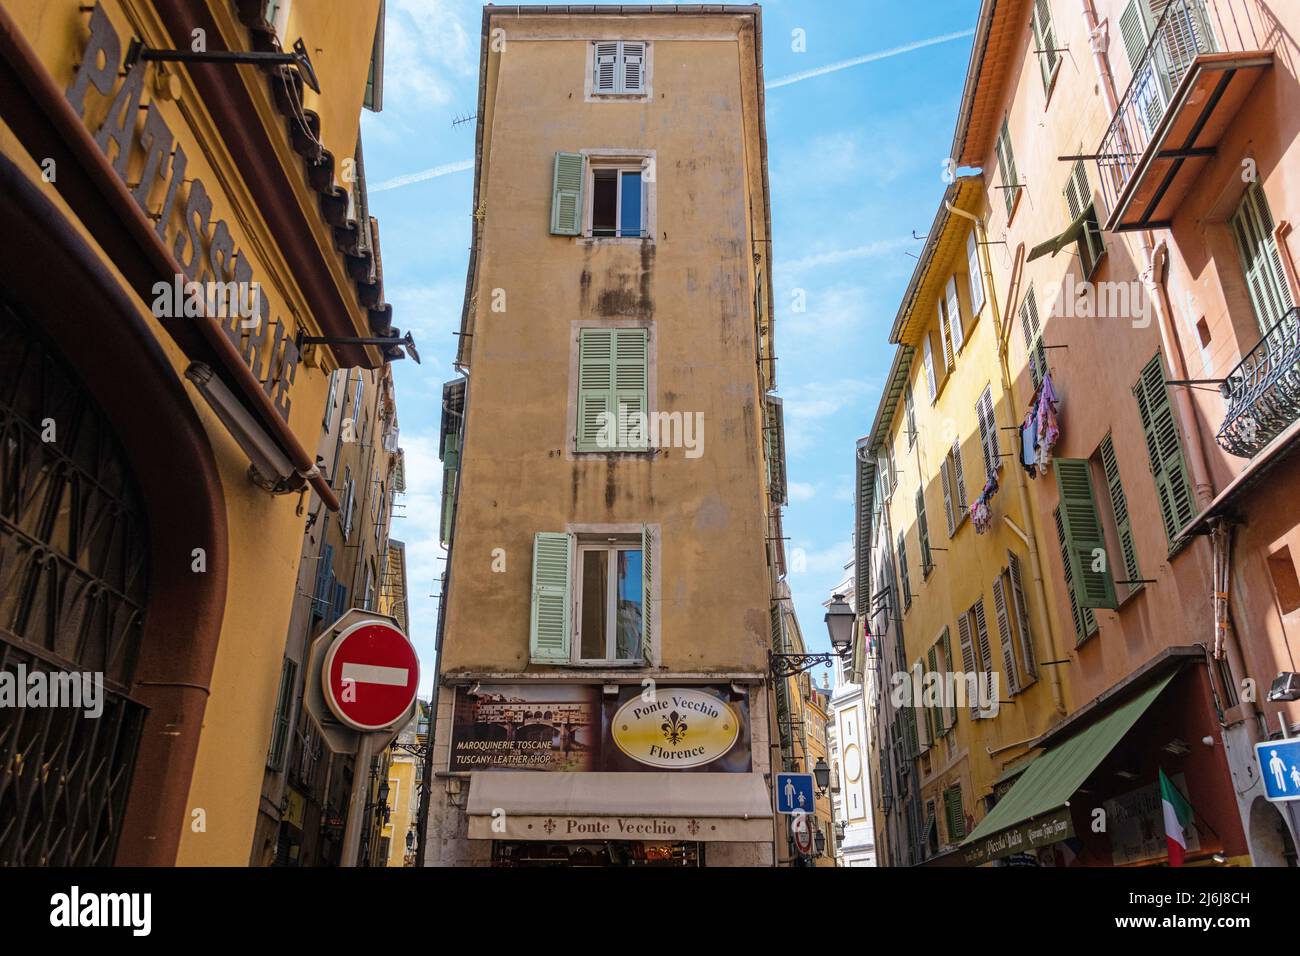 A narrow building on Rue Mascoinat, Nice, France. Stock Photo